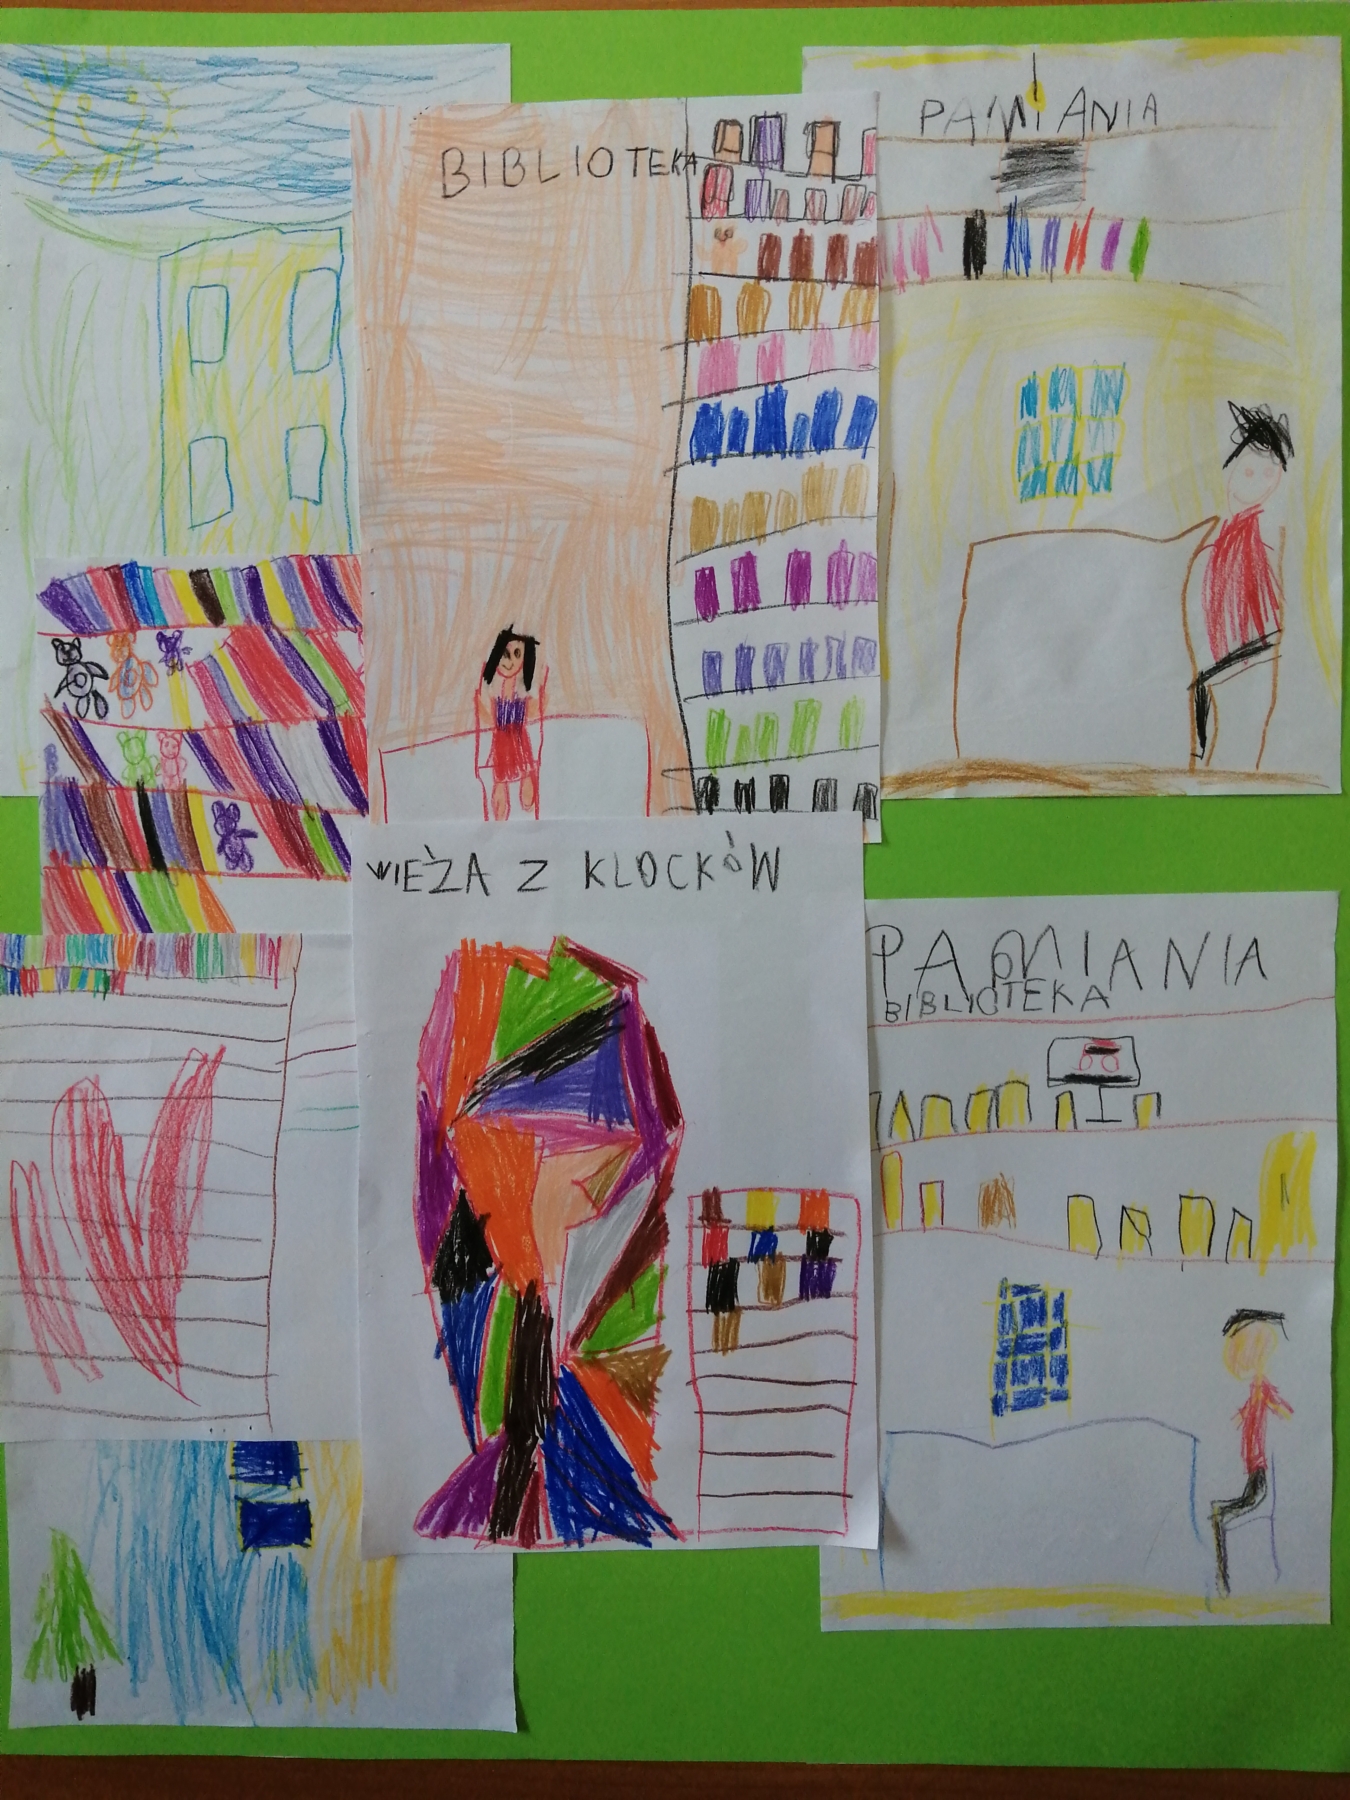 Rysunki wykonane przez dzieci przedstawiające bibliotekę